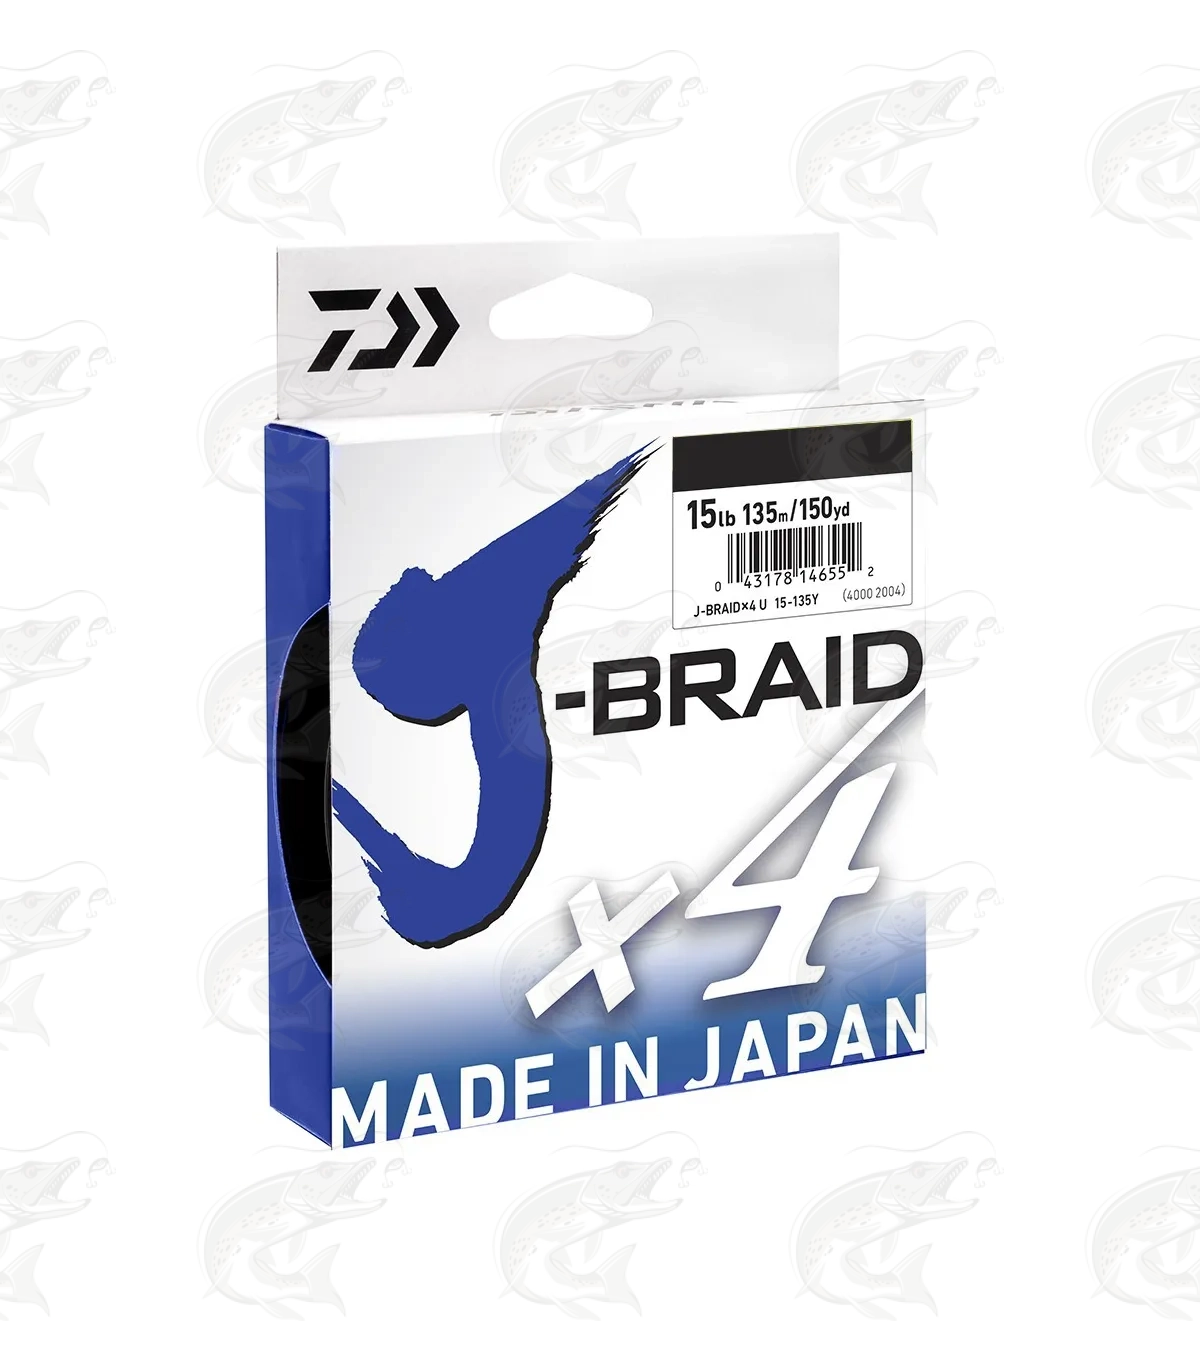 Green - Daiwa J-Braid X8/X4 Braided Fishing Line